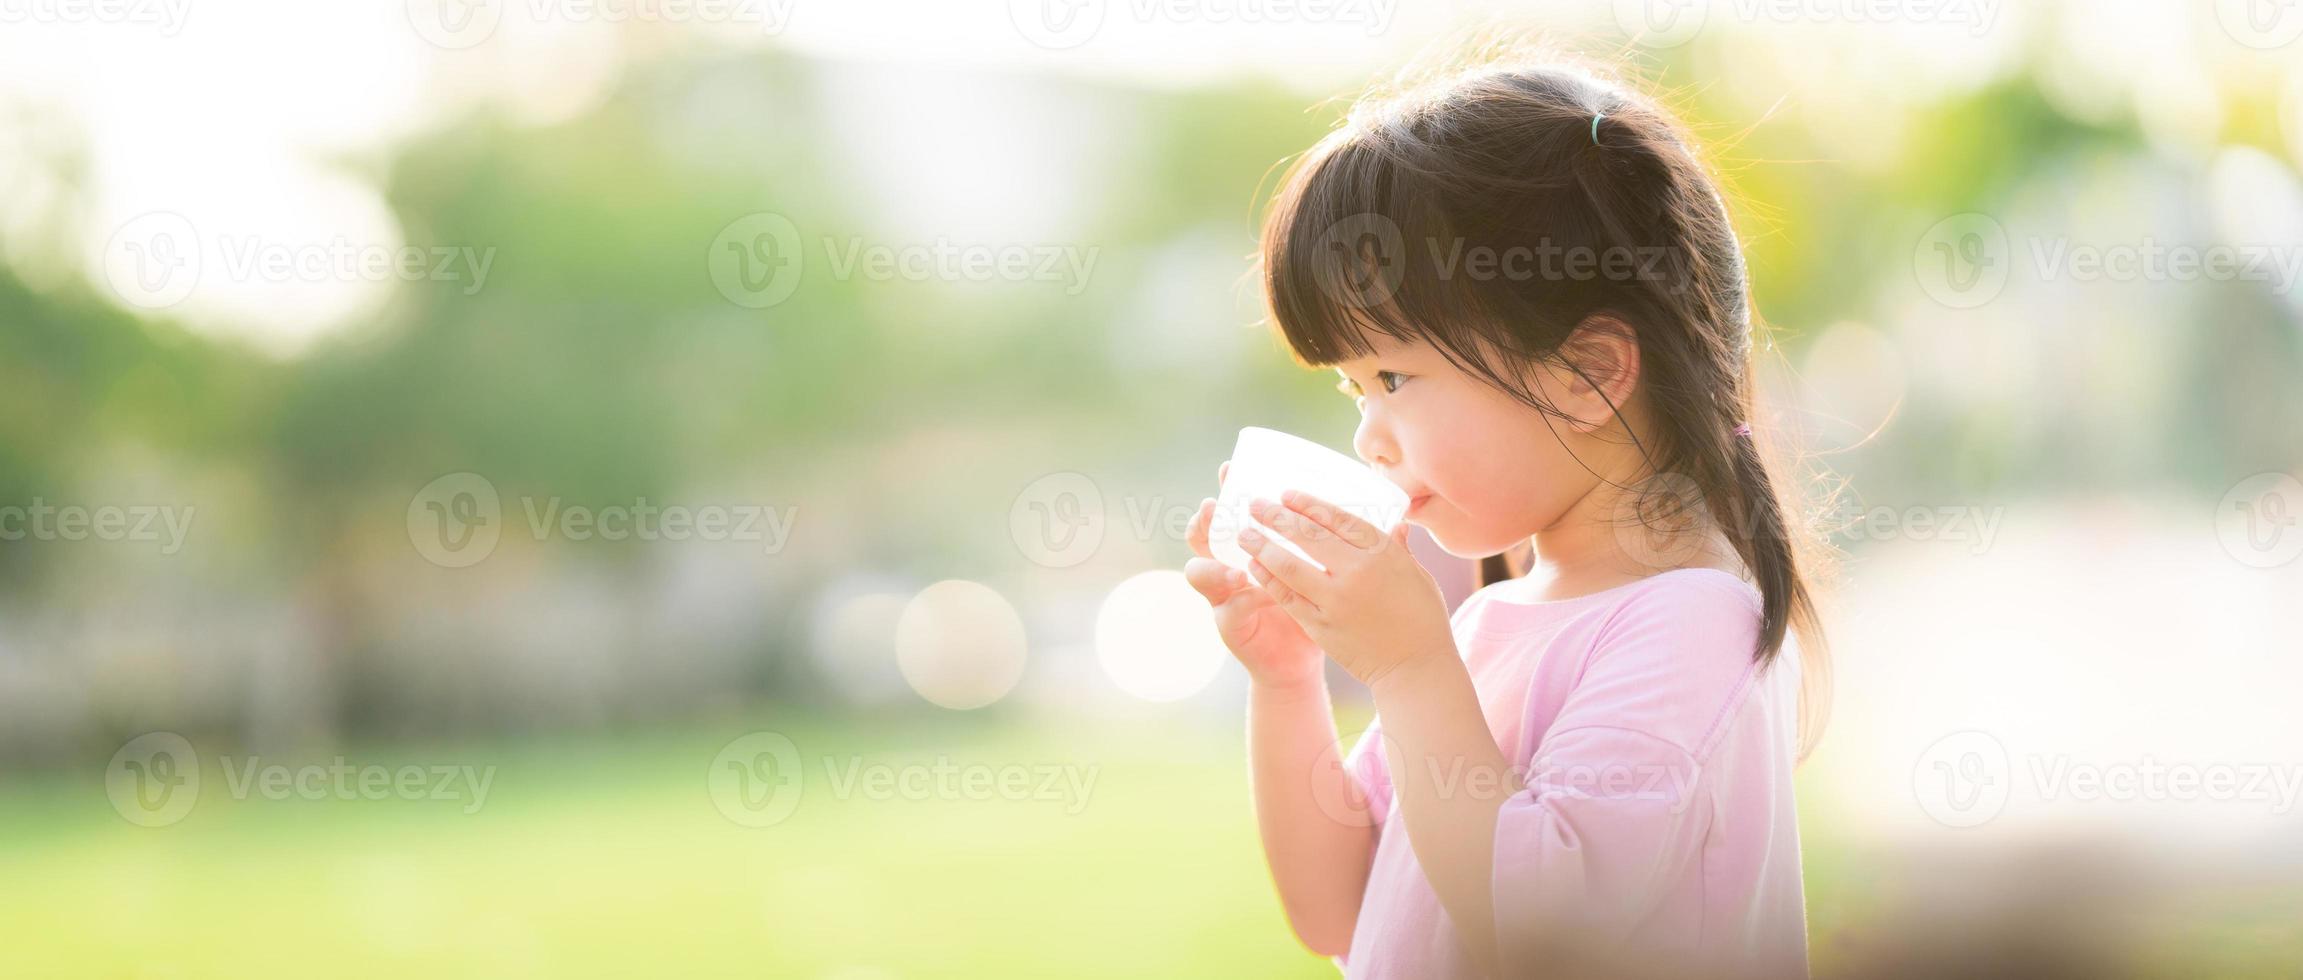 le concept de l'eau est idéal pour les enfants. enfant boit dans des verres en plastique. fond naturel. pendant l'été ou le printemps. du côté d'une fillette de 4 ans. photo